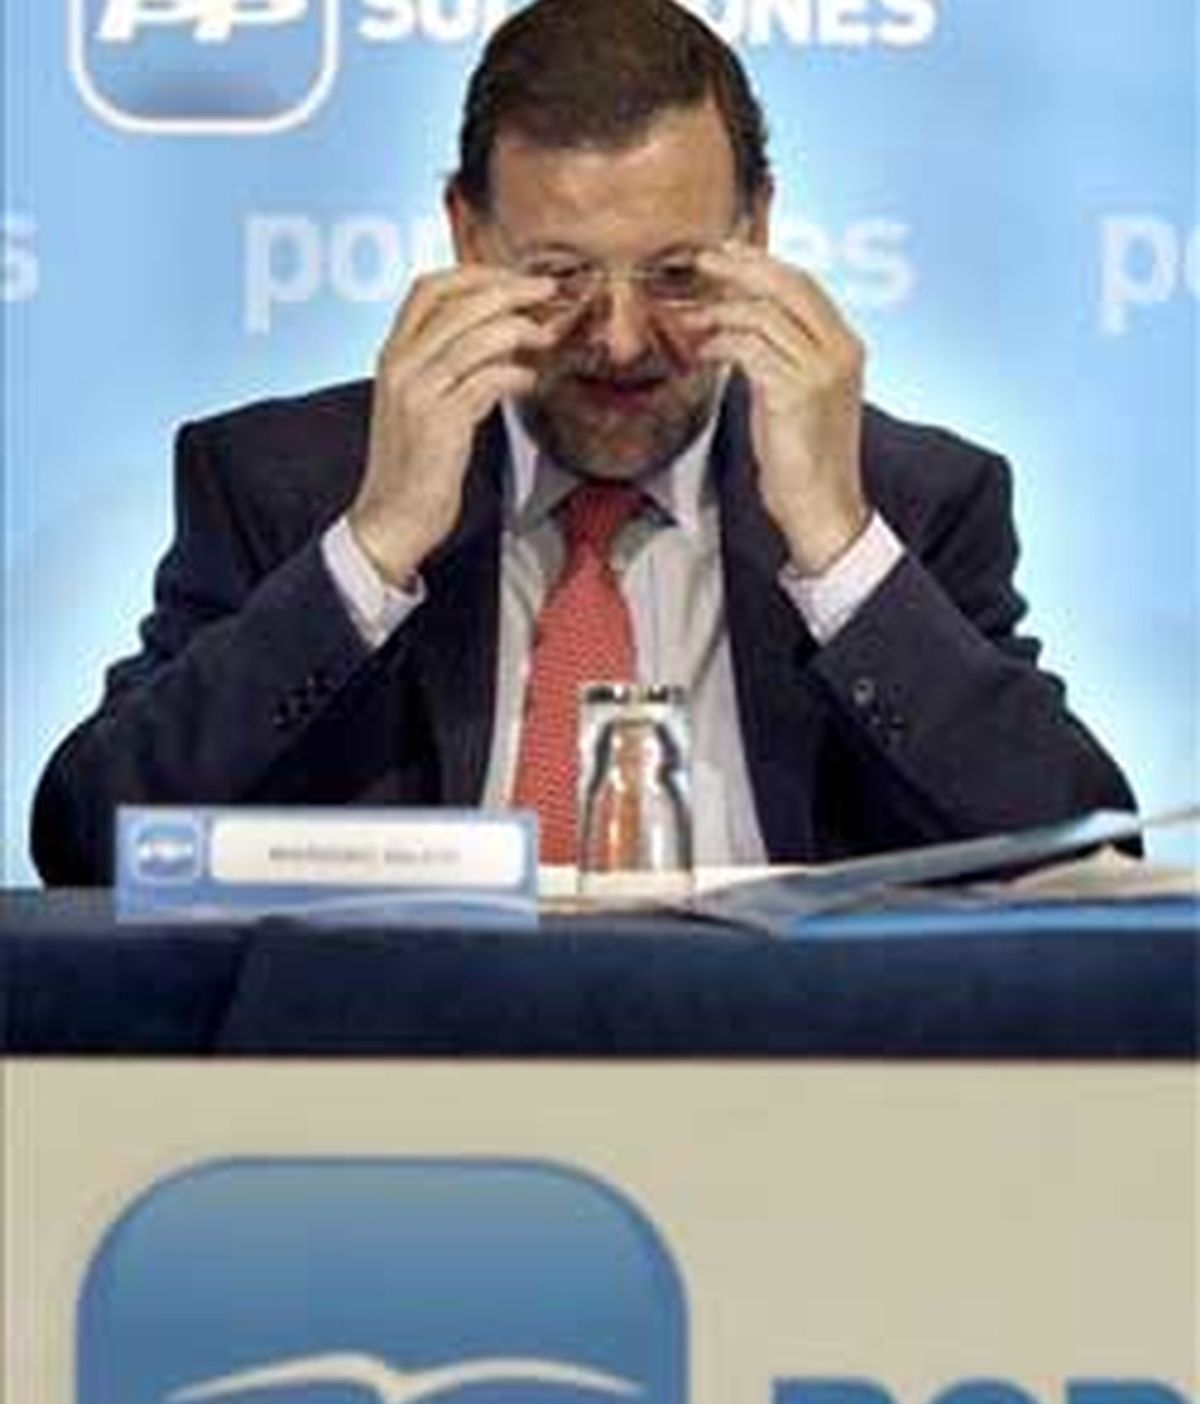 Mariano Rajoy ha manifestado además su desconfianza en la nueva ministra de Economía, Elena Salgado. Vídeo: Informativos Telecinco